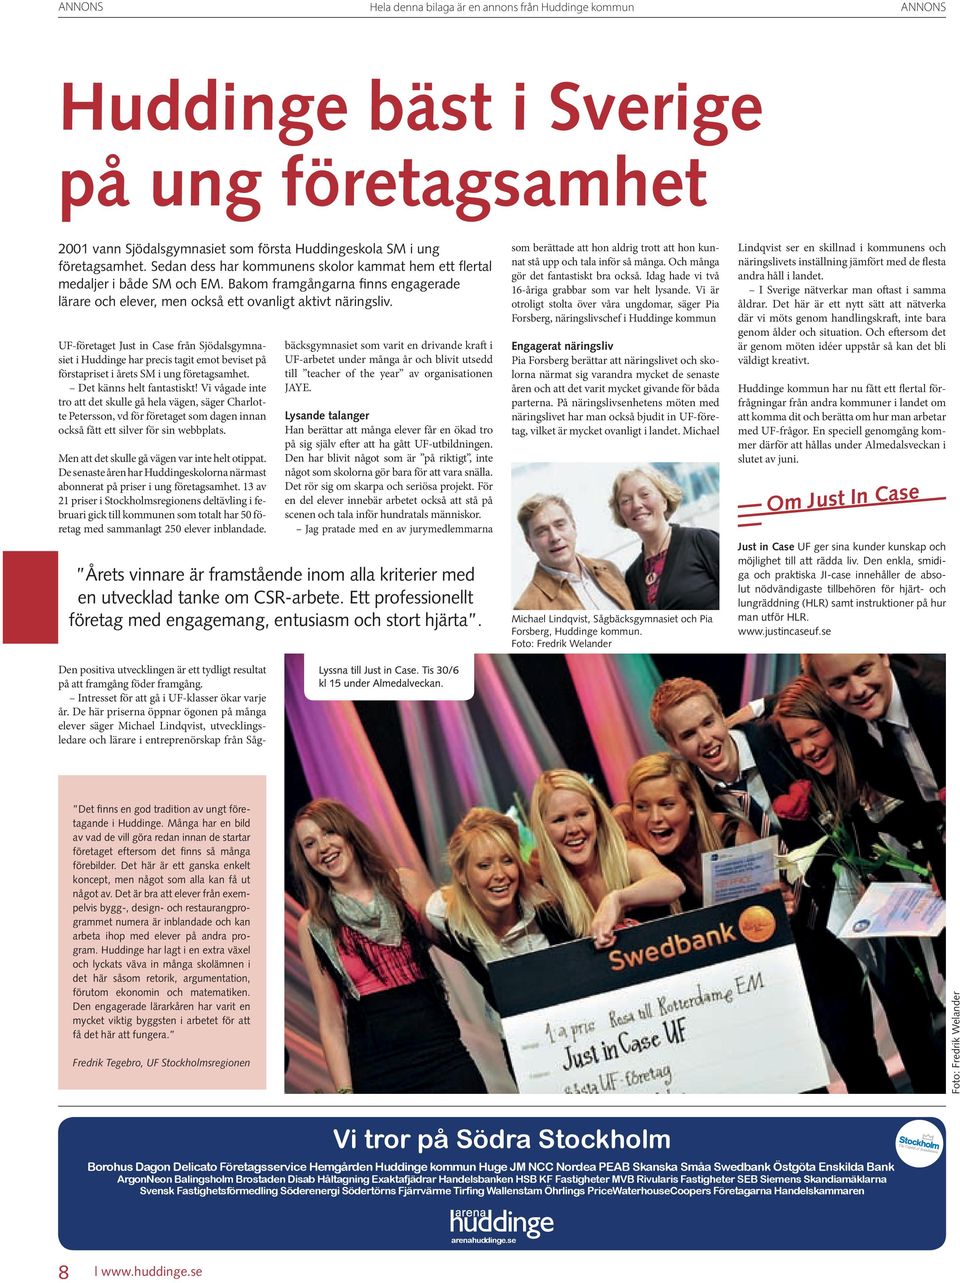 UF-företaget Just in Case från Sjödalsgymnasiet i Huddinge har precis tagit emot beviset på förstapriset i årets SM i ung företagsamhet. Det känns helt fantastiskt!